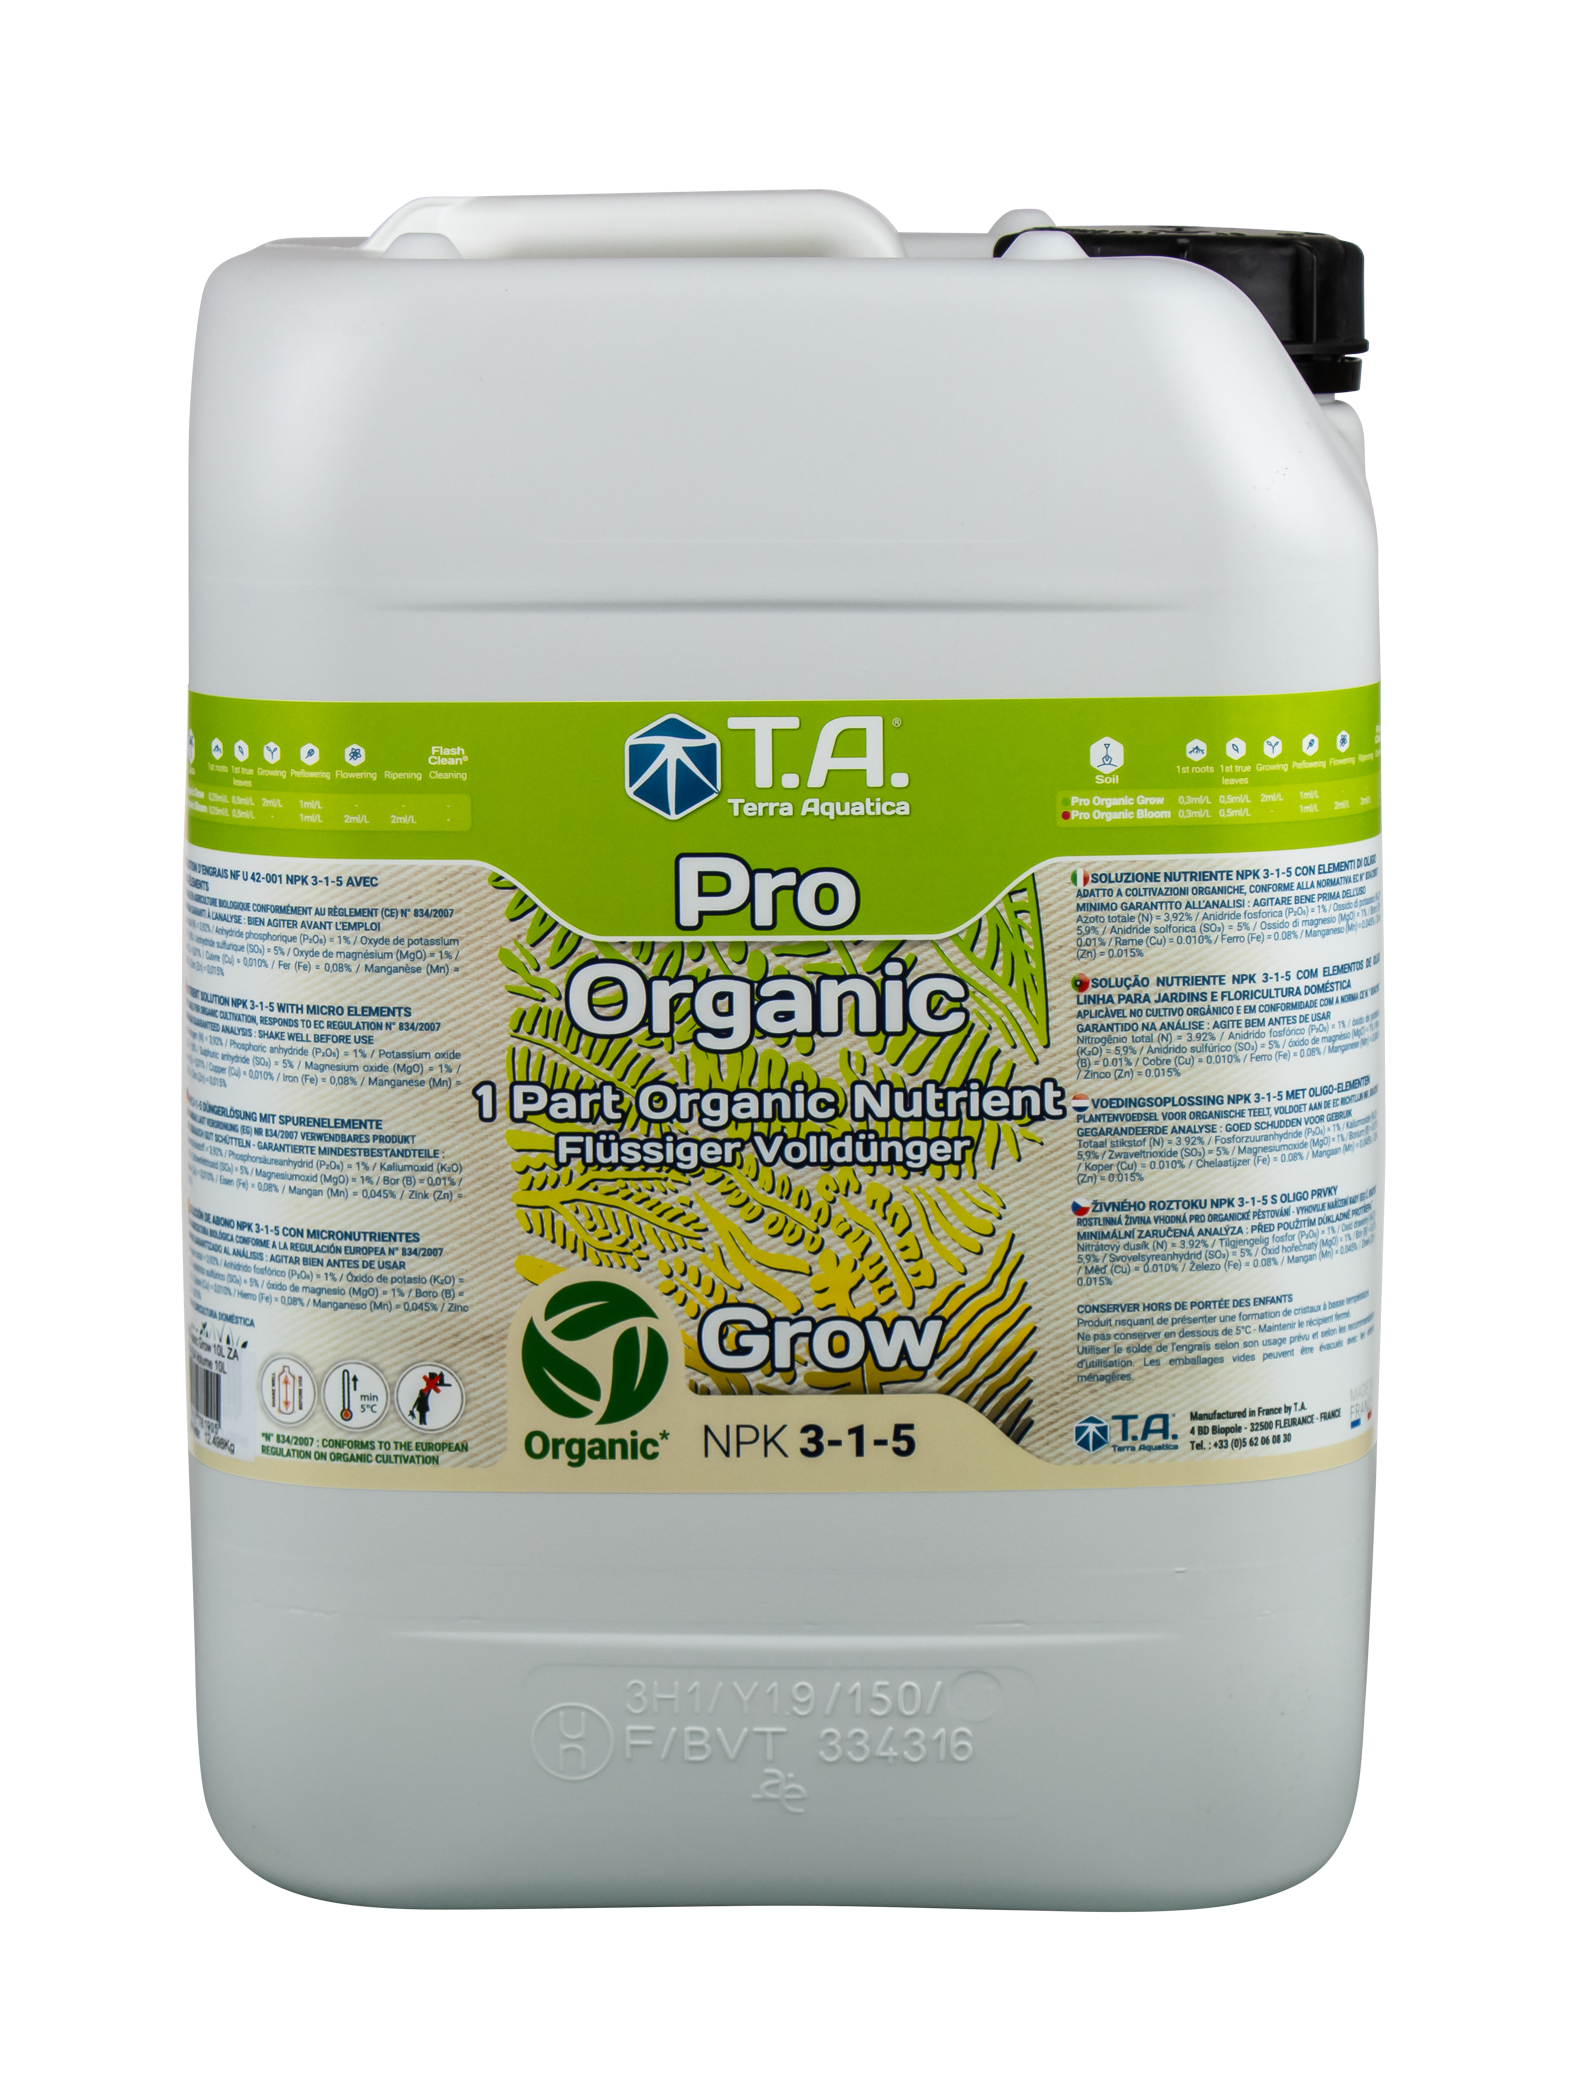 Pro Organic Grow - პრო ორგანიკ გროუ